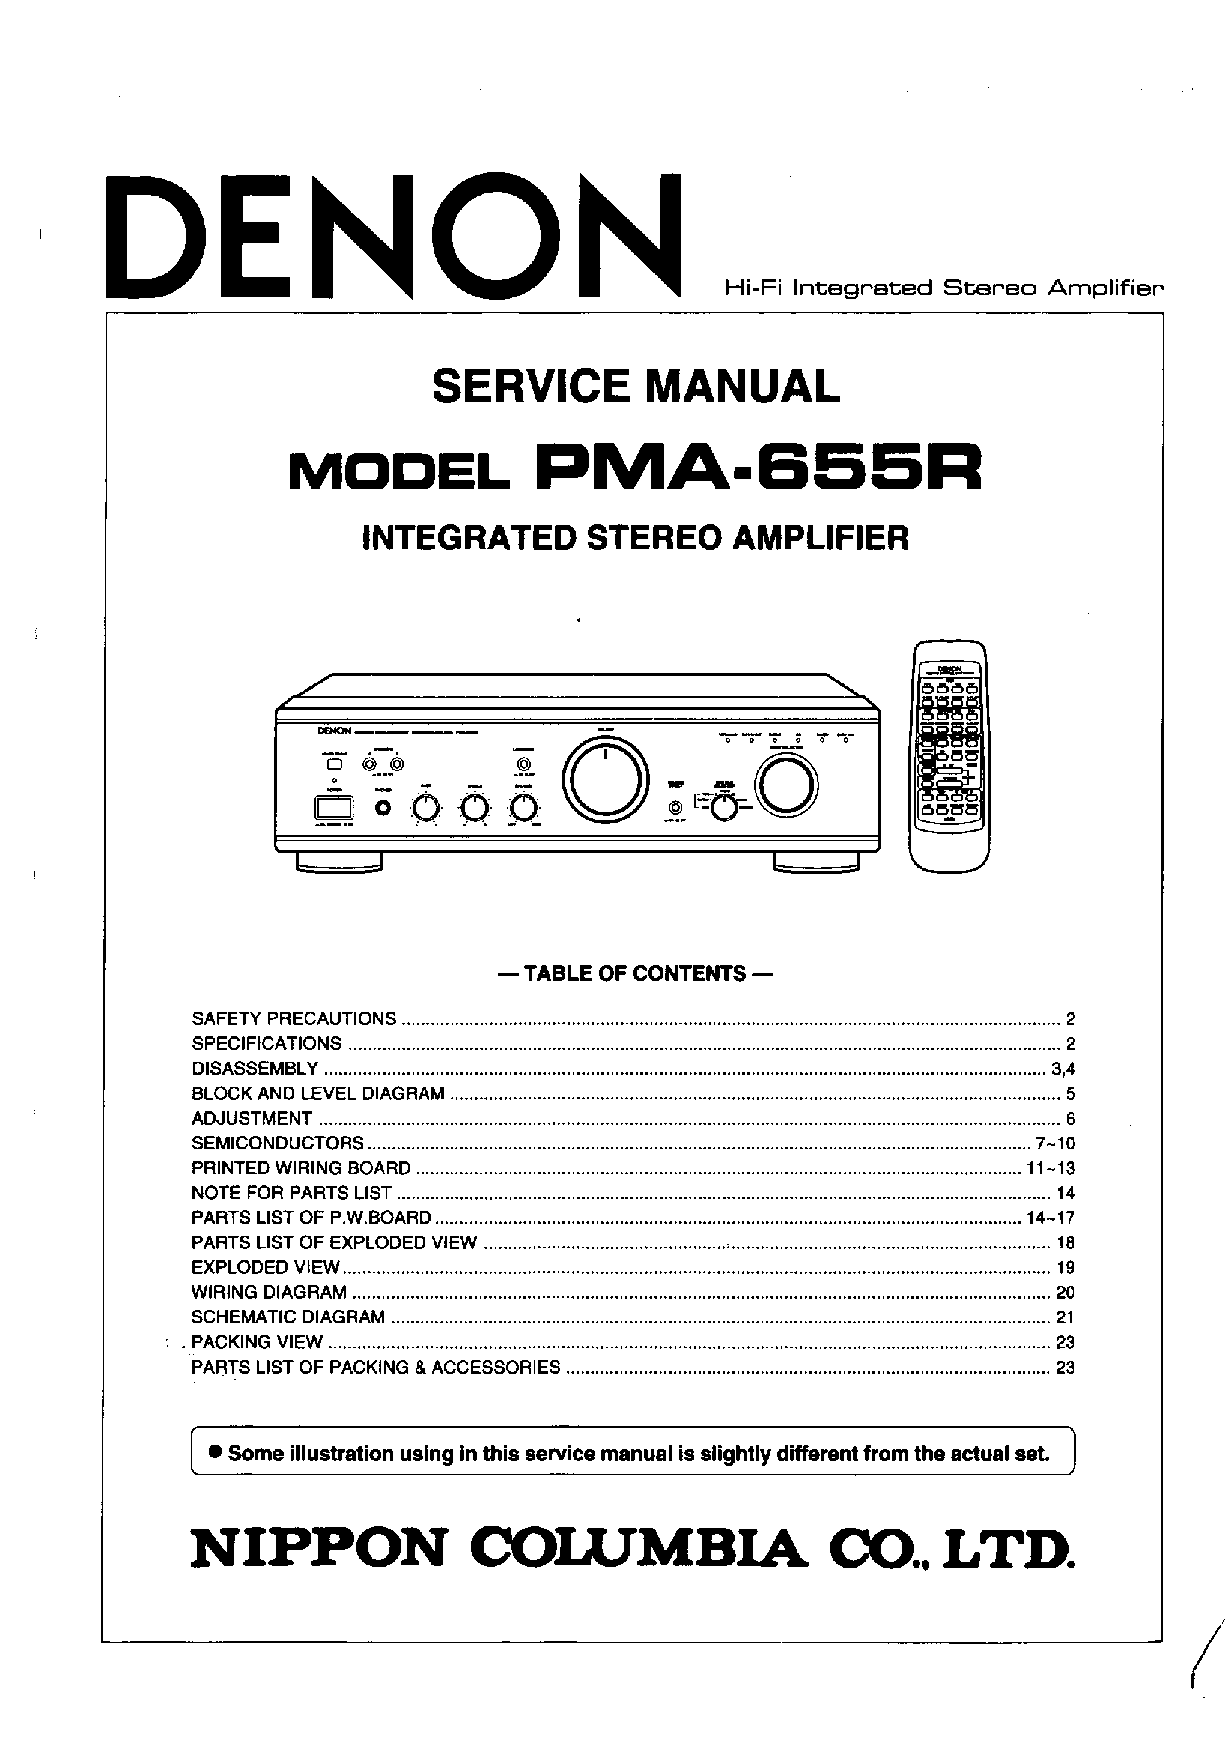 Denon PMA-655R Service Manual